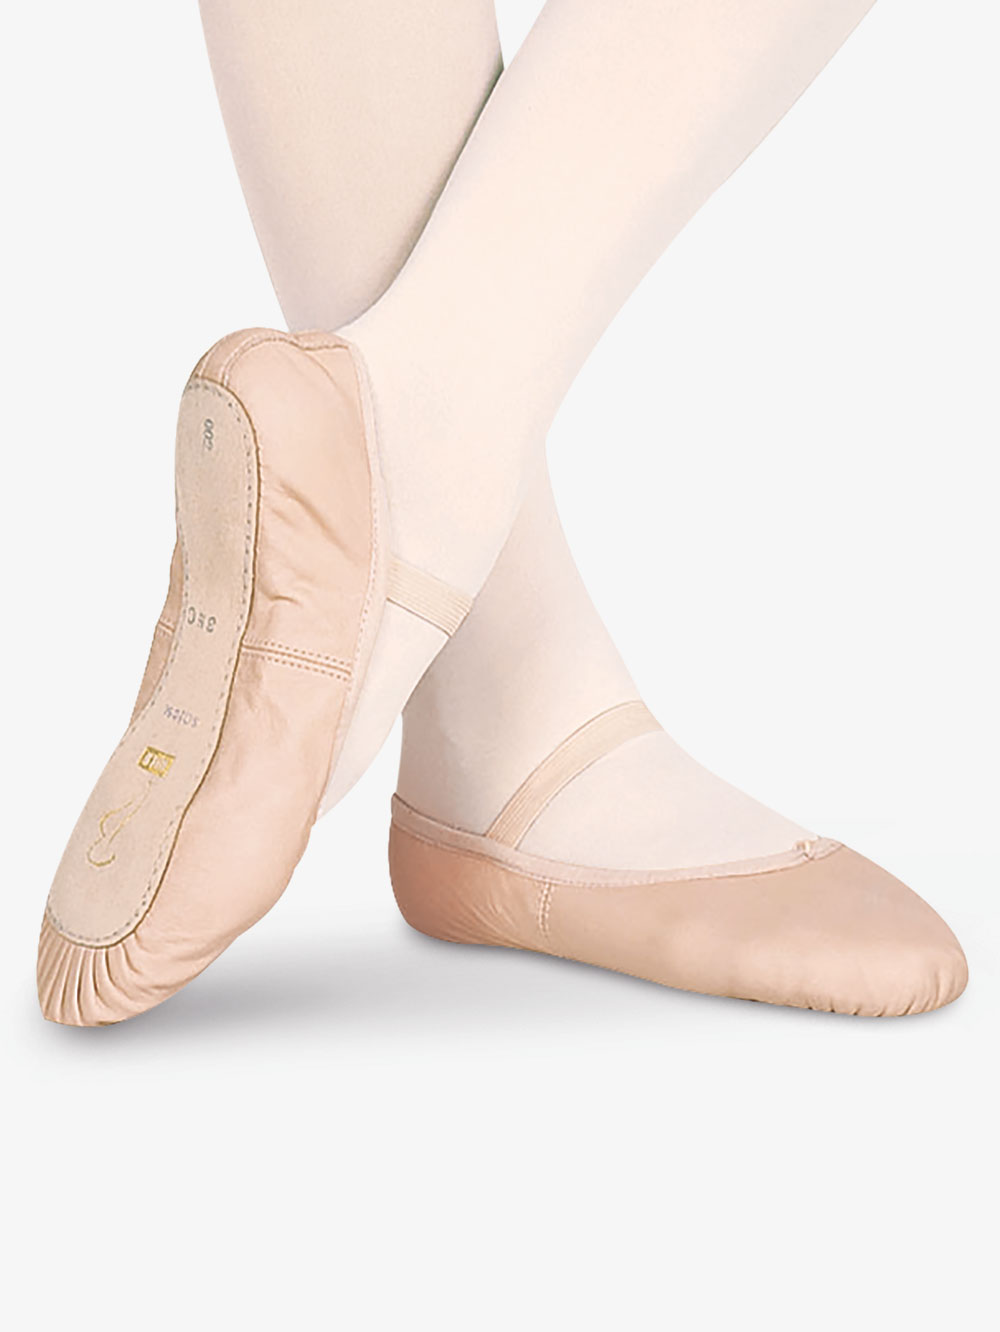 bloch girls ballet shoes